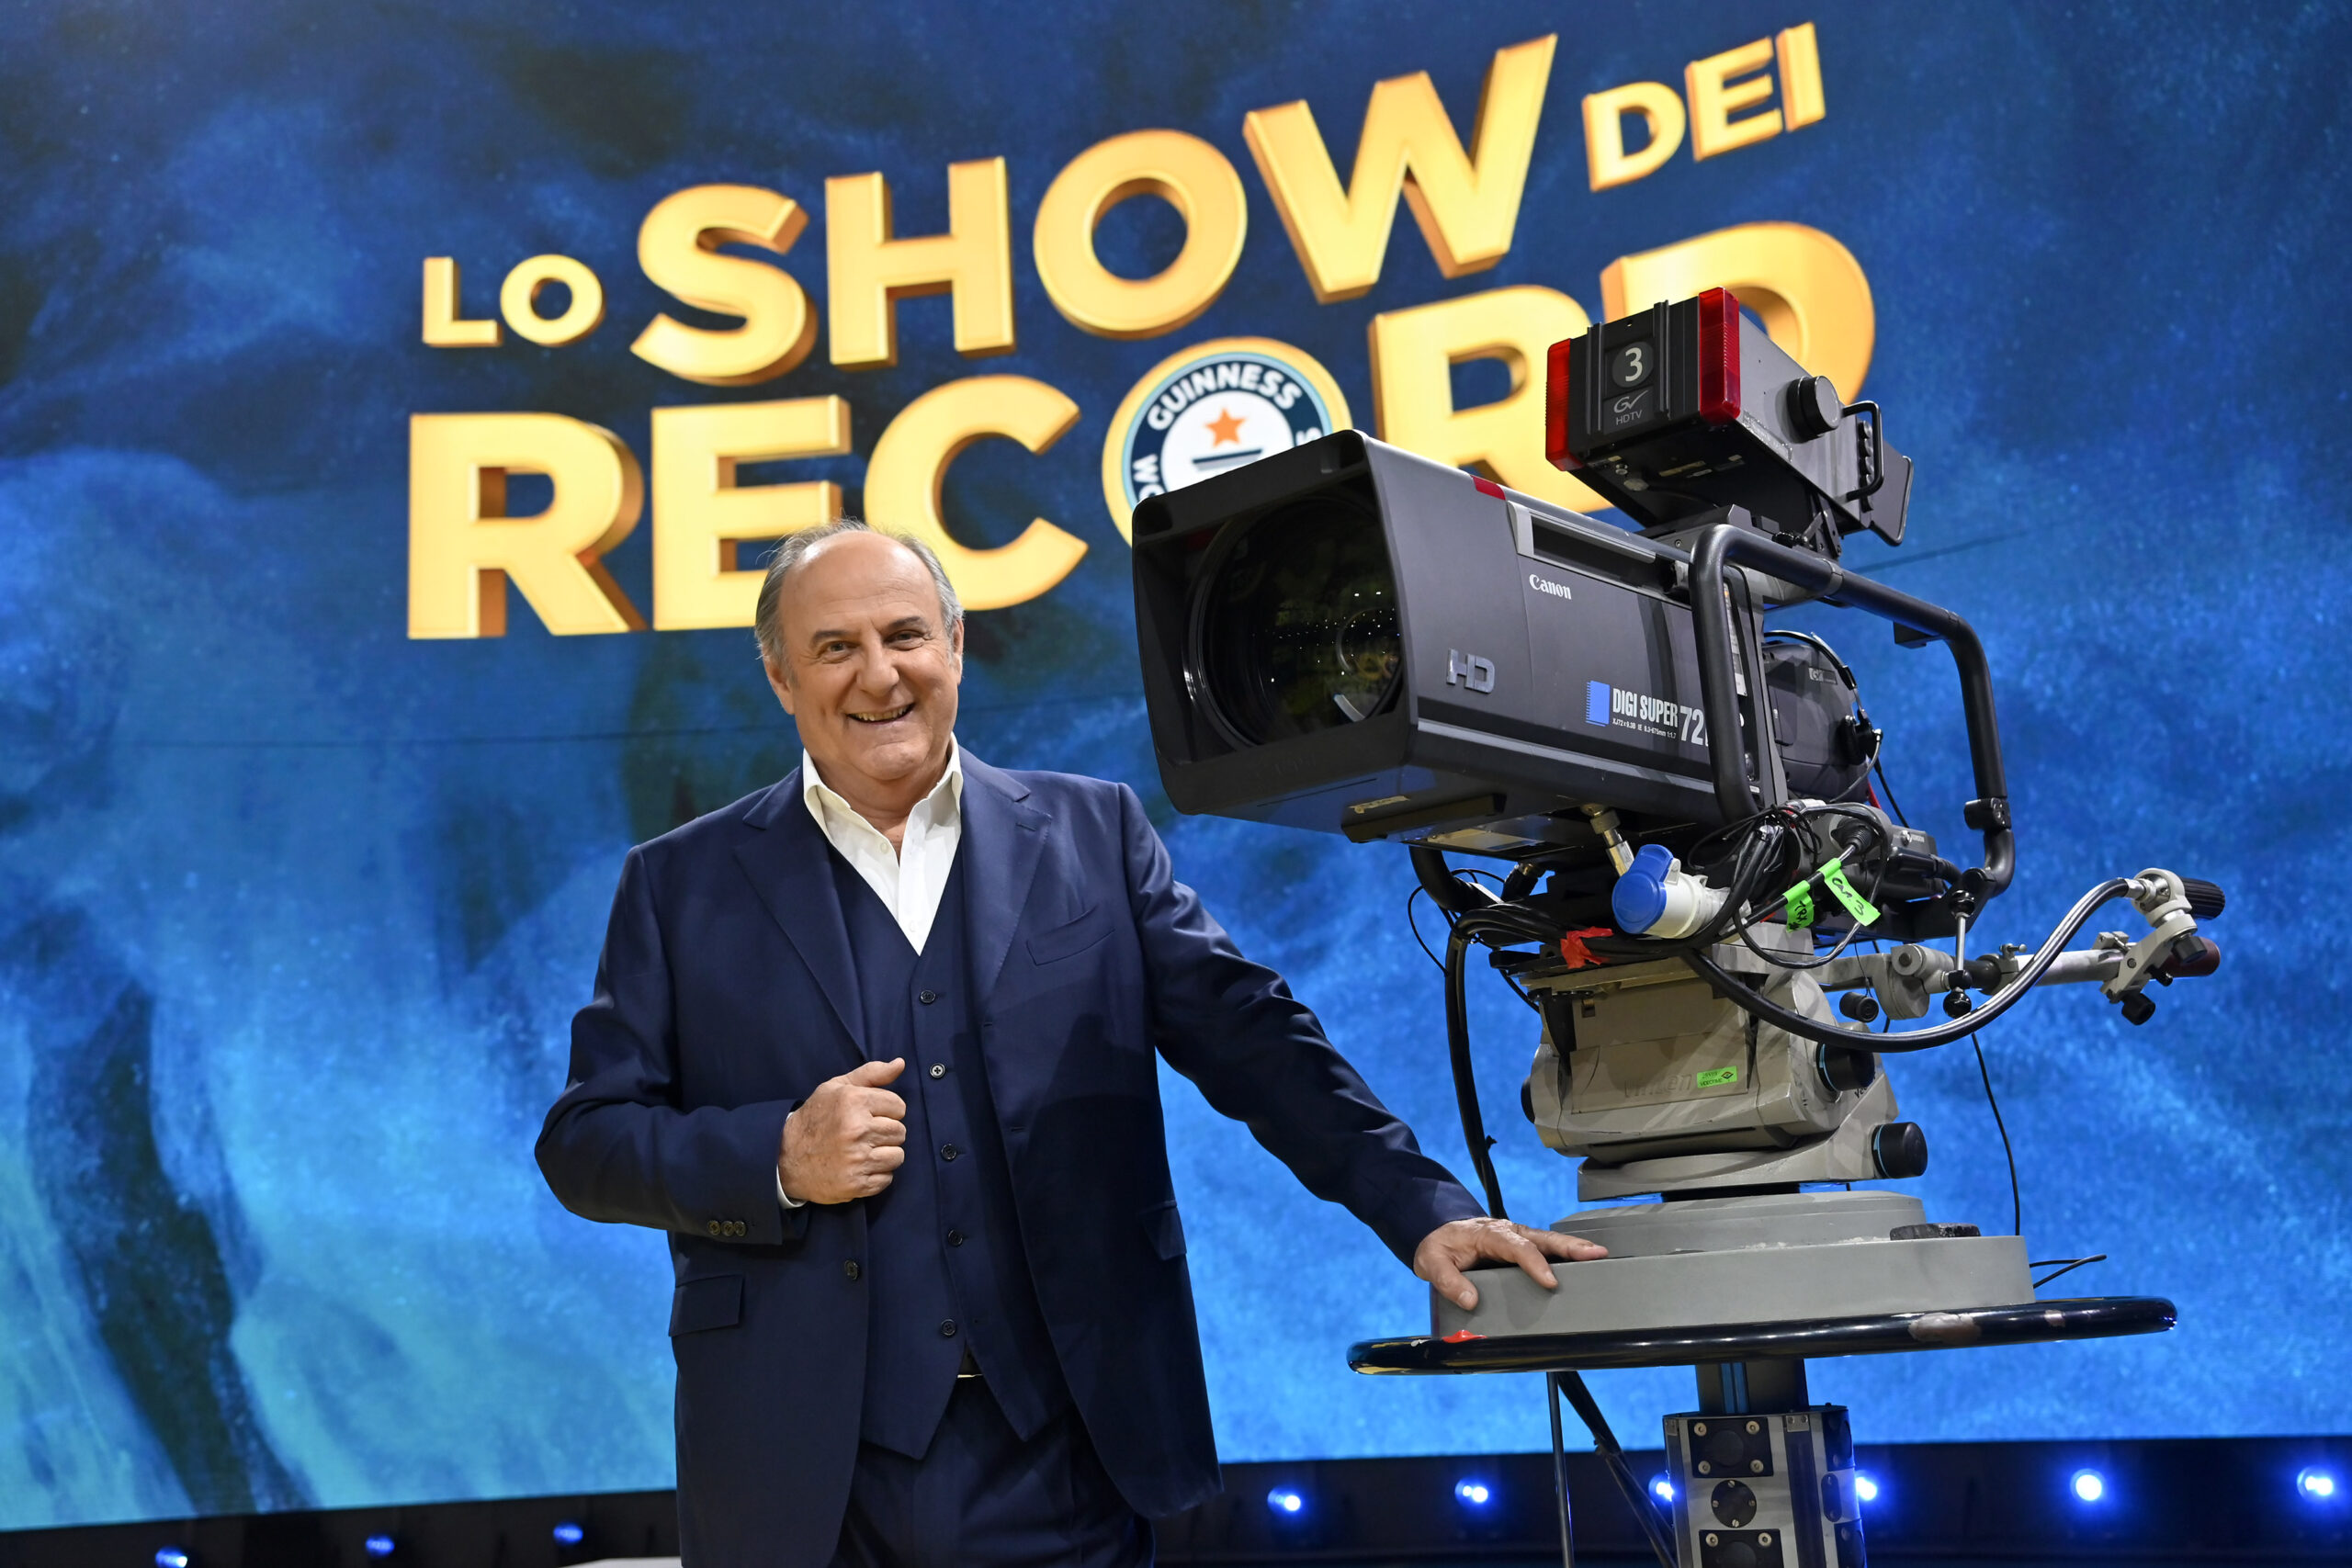 Lo Show dei Record 2023, sesto appuntamento. Condotto da Gerry Scotti, in onda in prima serata su Canale5